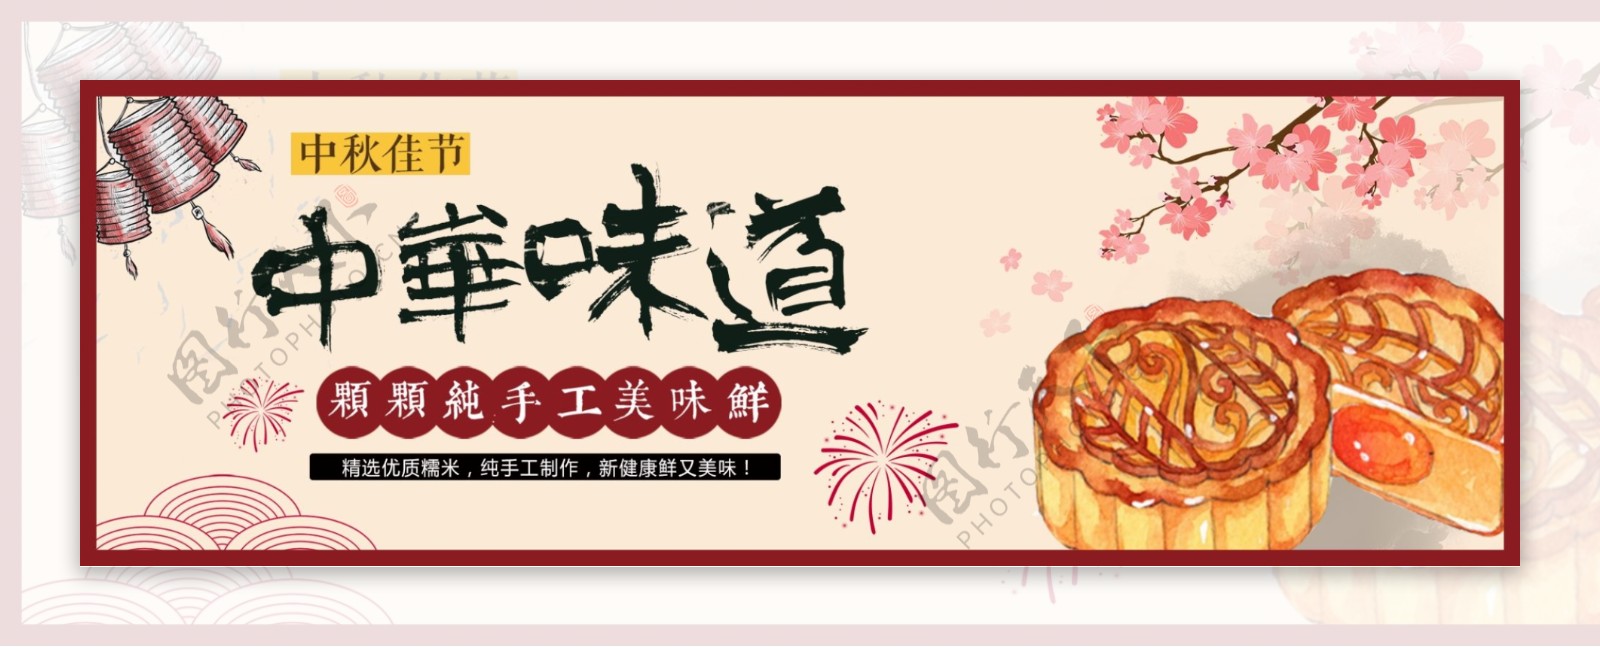 淘宝天猫电商中秋节手绘传统月饼促销海报banner模板设计